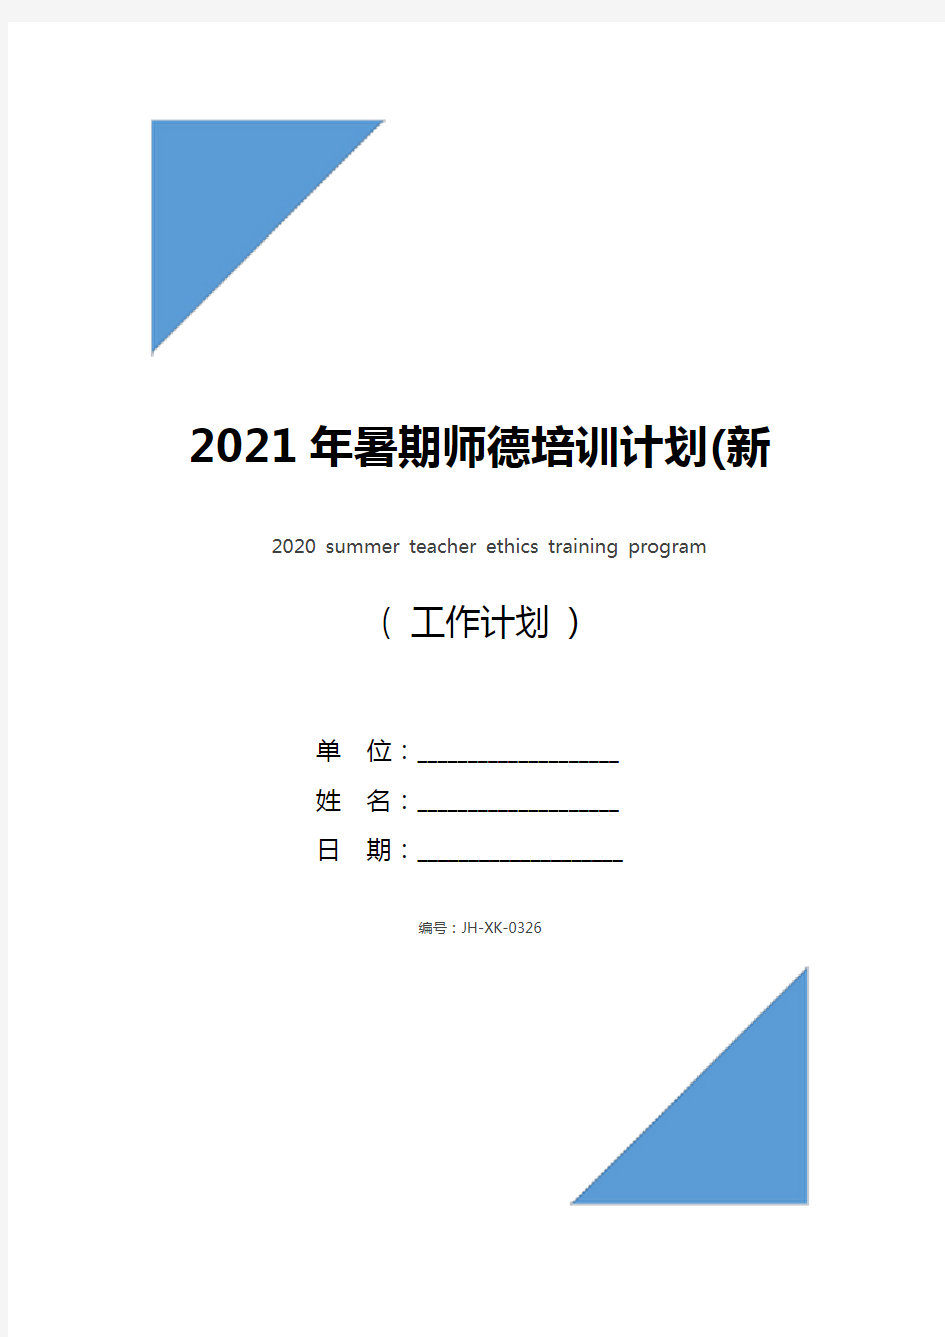 2021年暑期师德培训计划(新版)